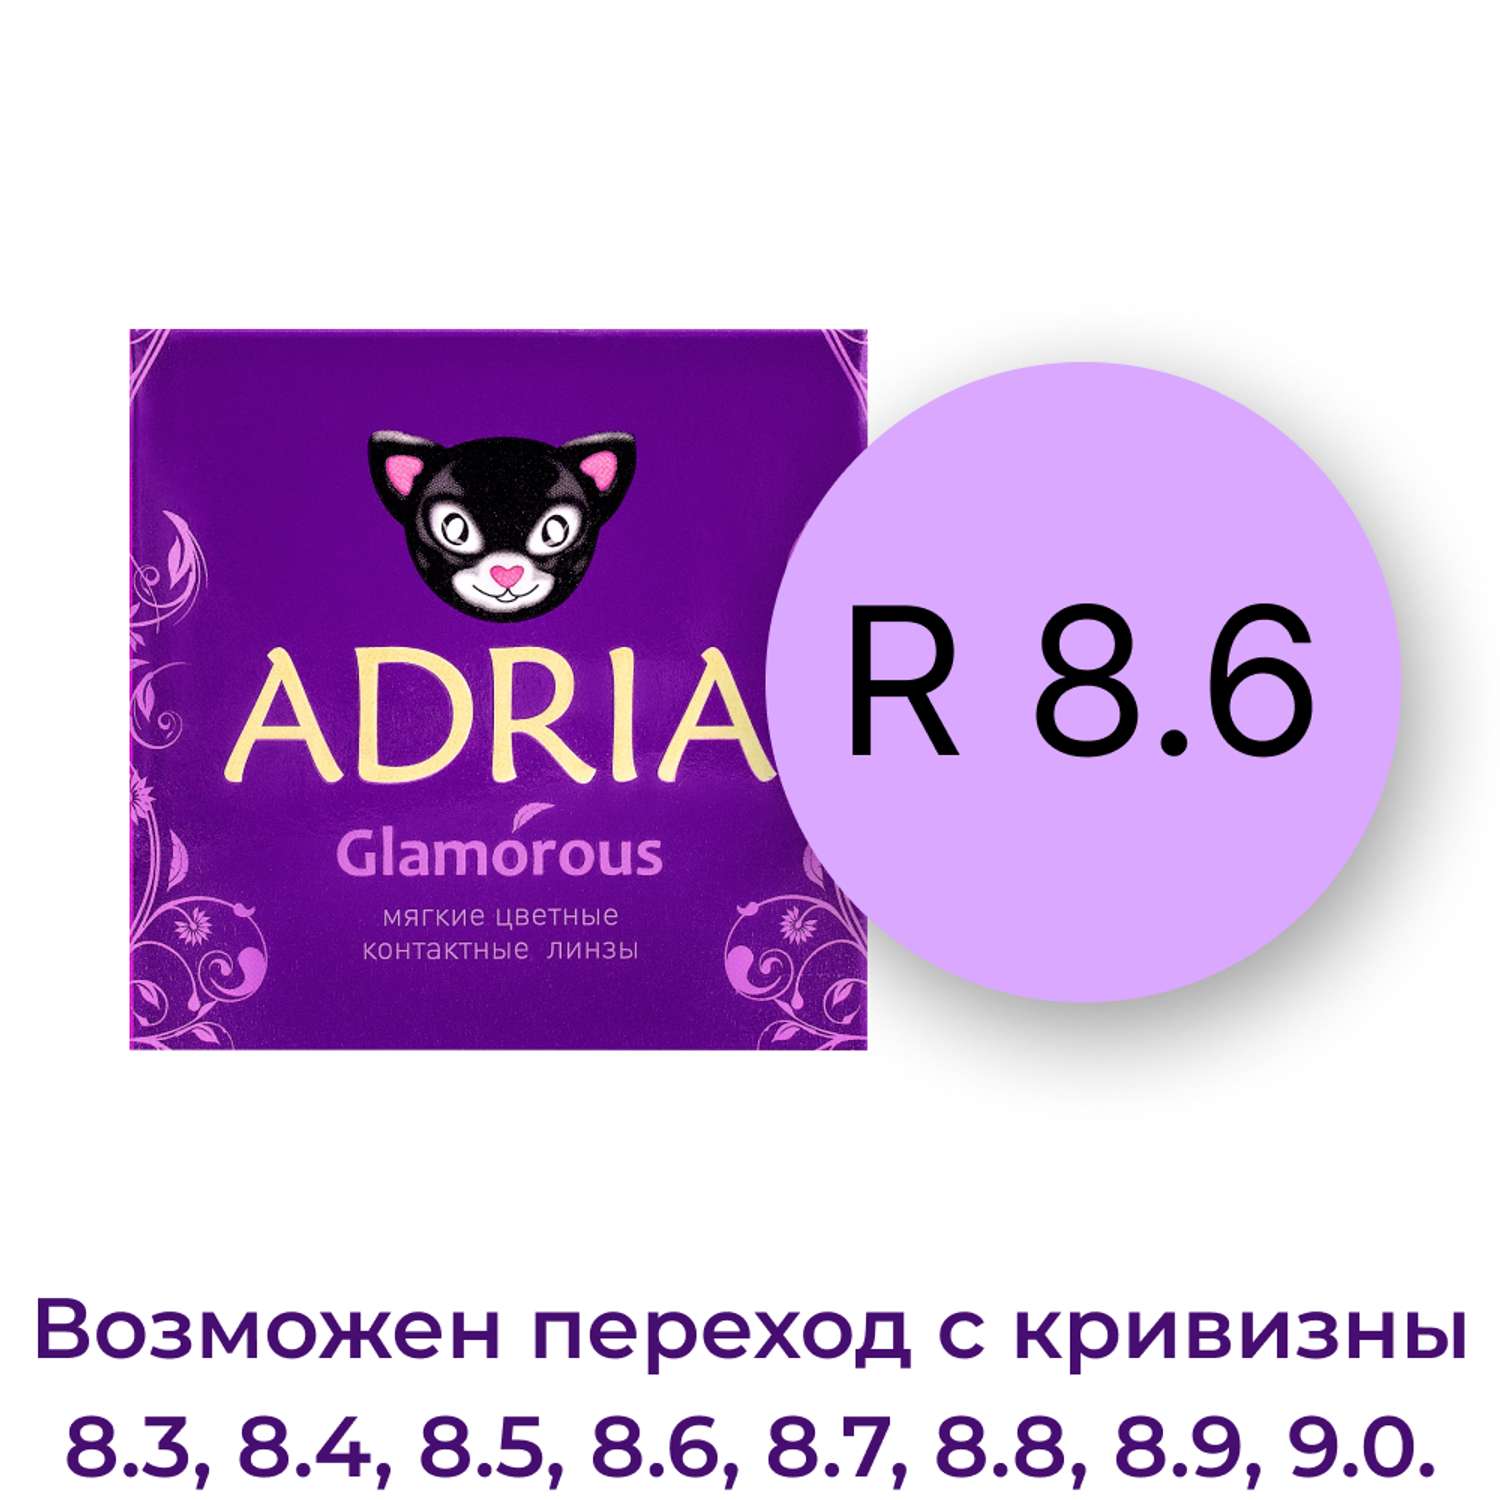 Цветные контактные линзы ADRIA Glamorous 2 линзы R 8.6 Brown -0.00 - фото 3